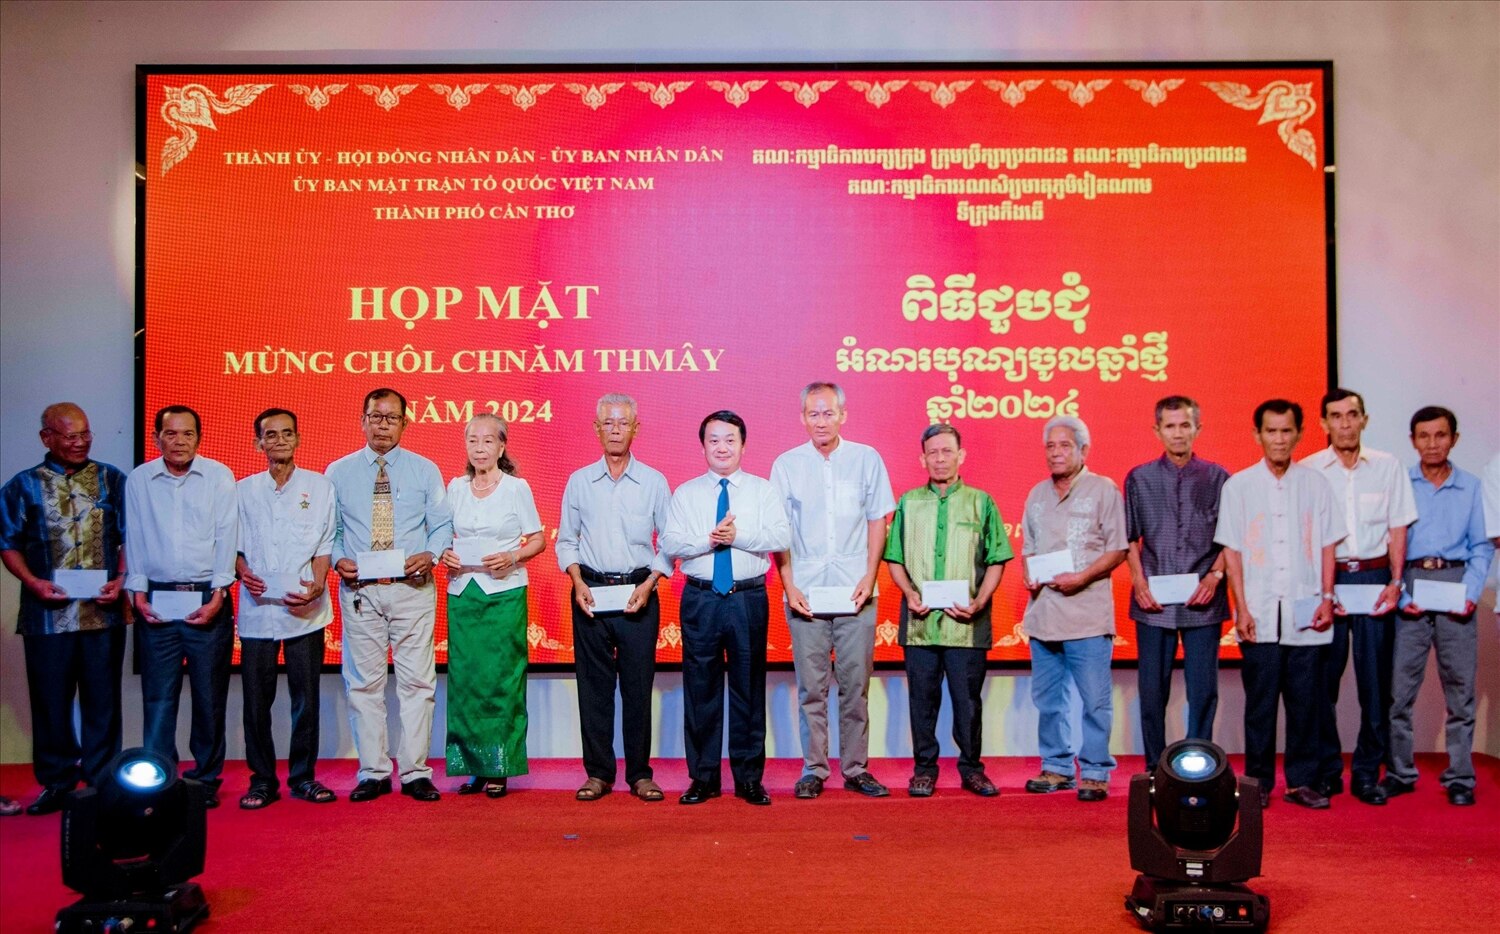 Bộ trưởng Hầu A Lềnh đã trao những phần quà ý nghĩa mừng Chôl Chnăm Thmây đến Người có uy tín trong vùng đồng bào dân tộc Khmer trên đại bàn TP. Cần Thơ